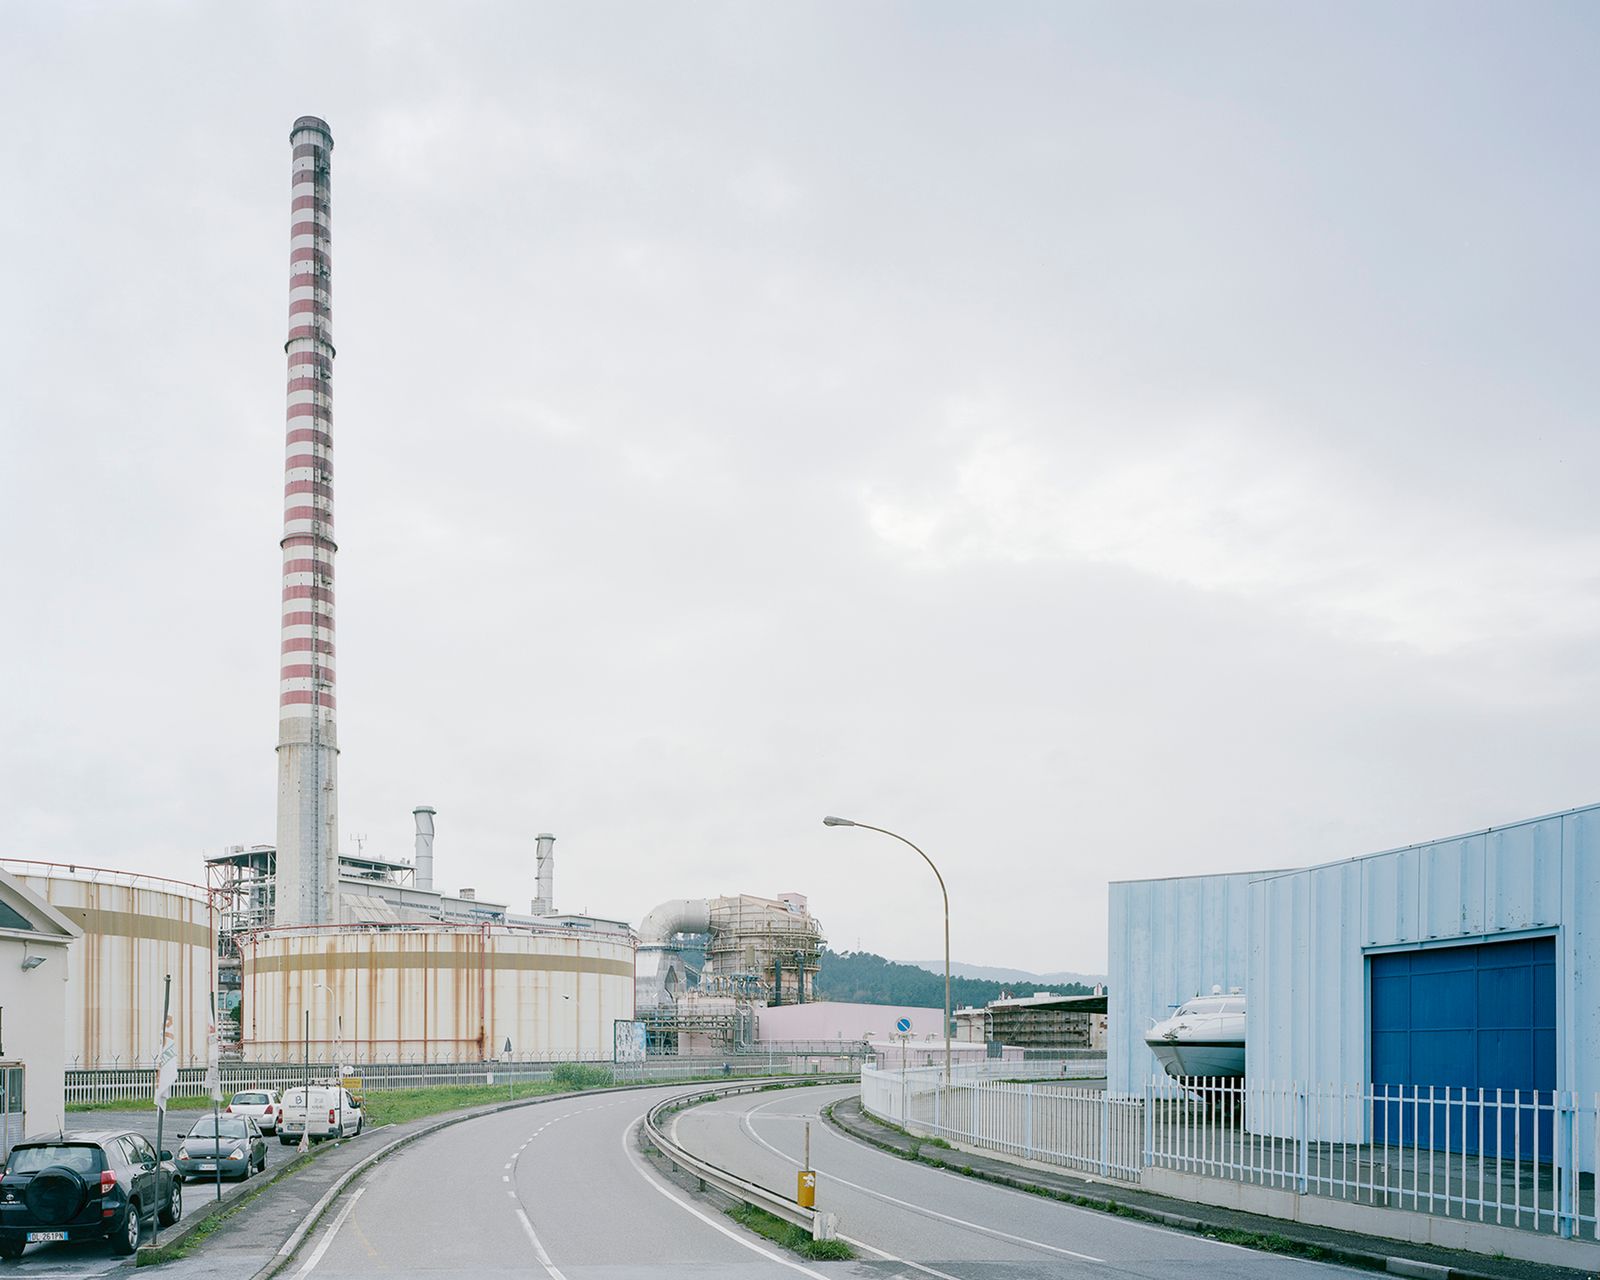 © Pietro Viti - The tall chimney of the “Eugenio Montale” coal plant, in the industrial zone of La Spezia. La Spezia, 2015.